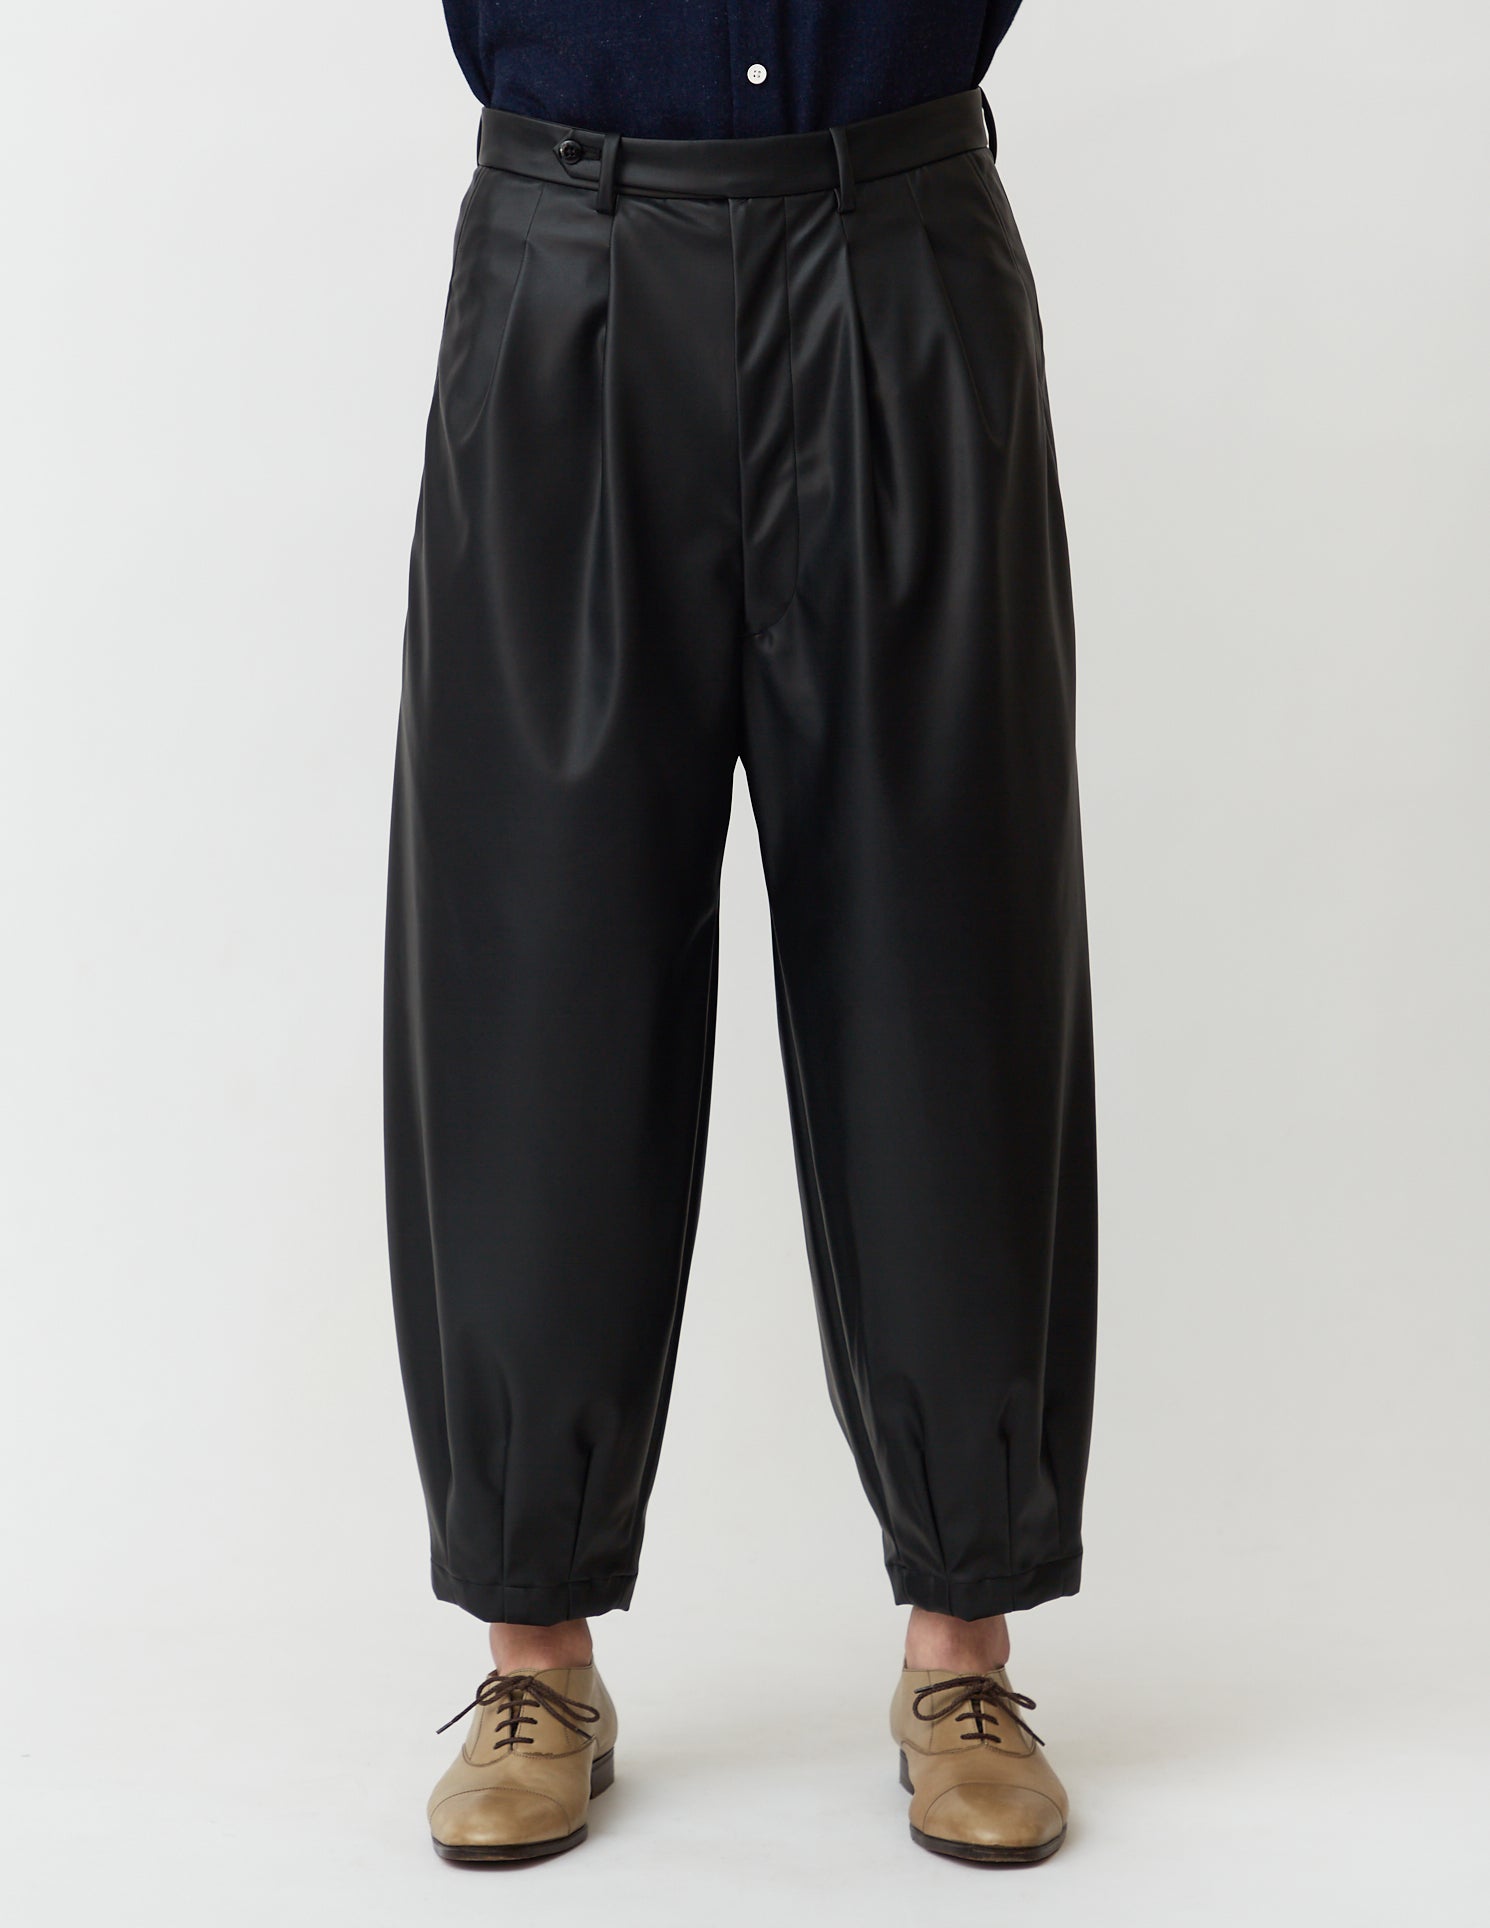 Harem Pants faux leather black/brown